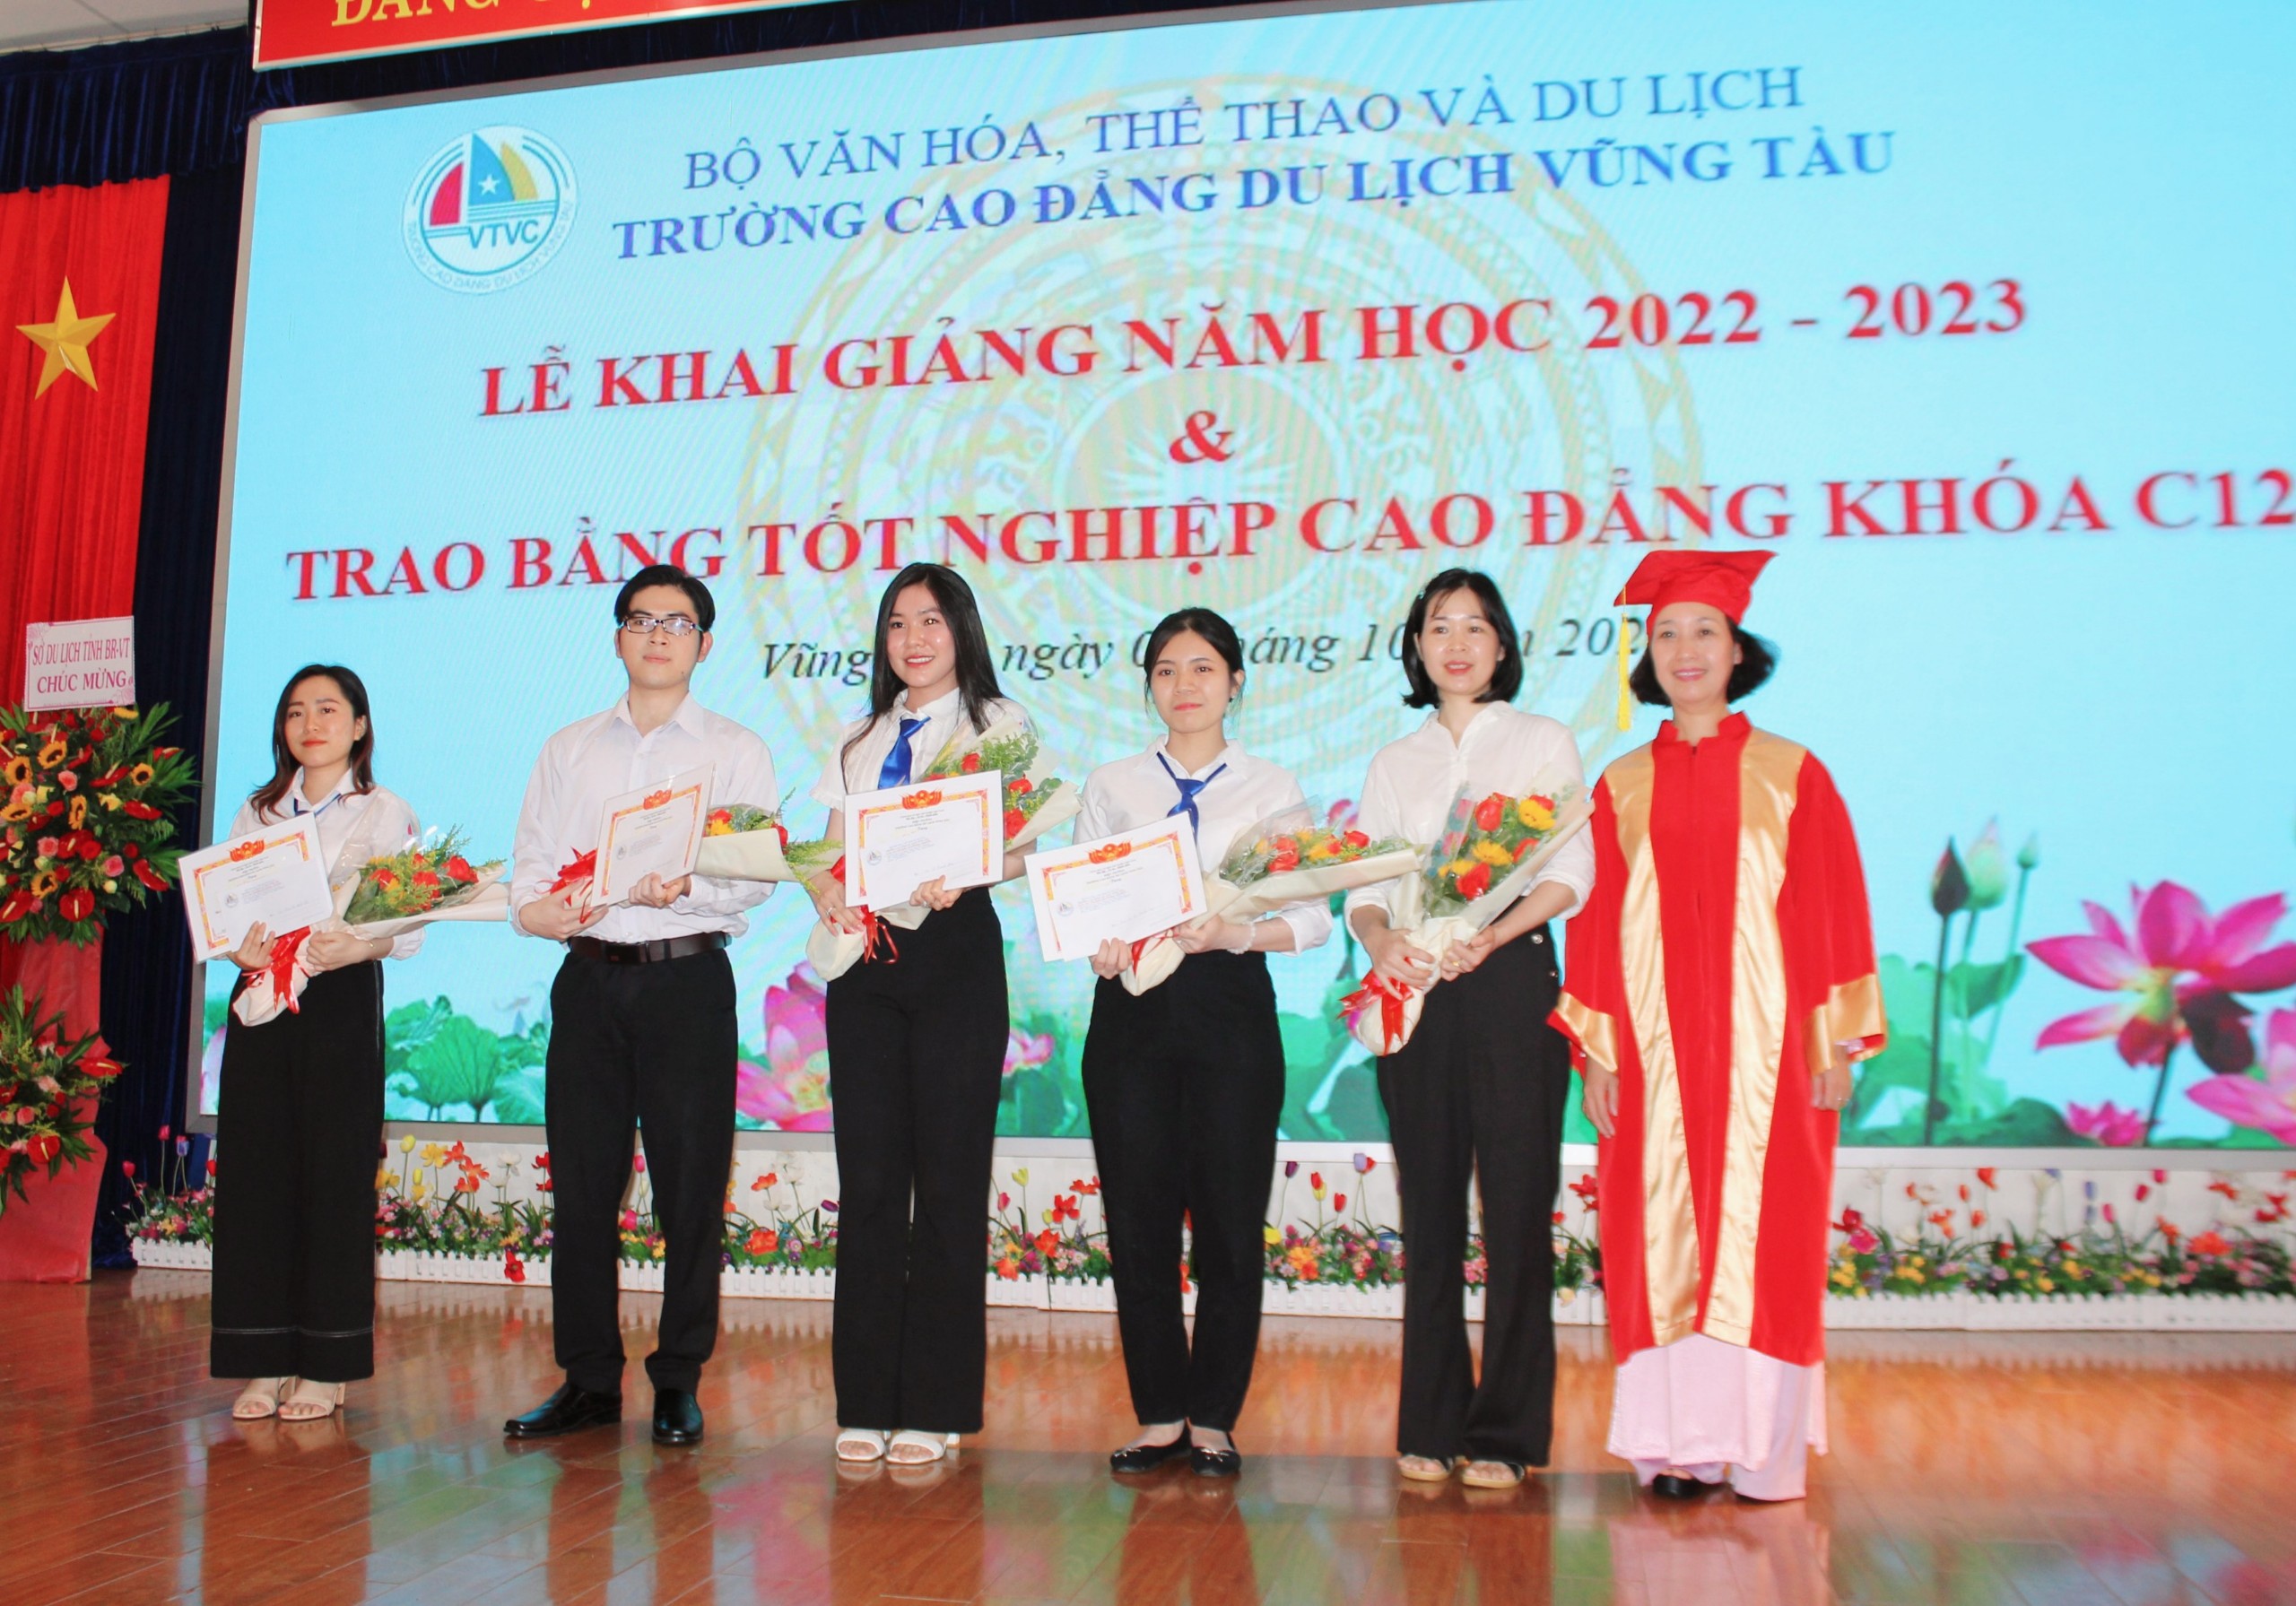 Nhà trường khen thưởng 5 sinh viên có thành tích xuất sắc trong học tập và rèn luyện.